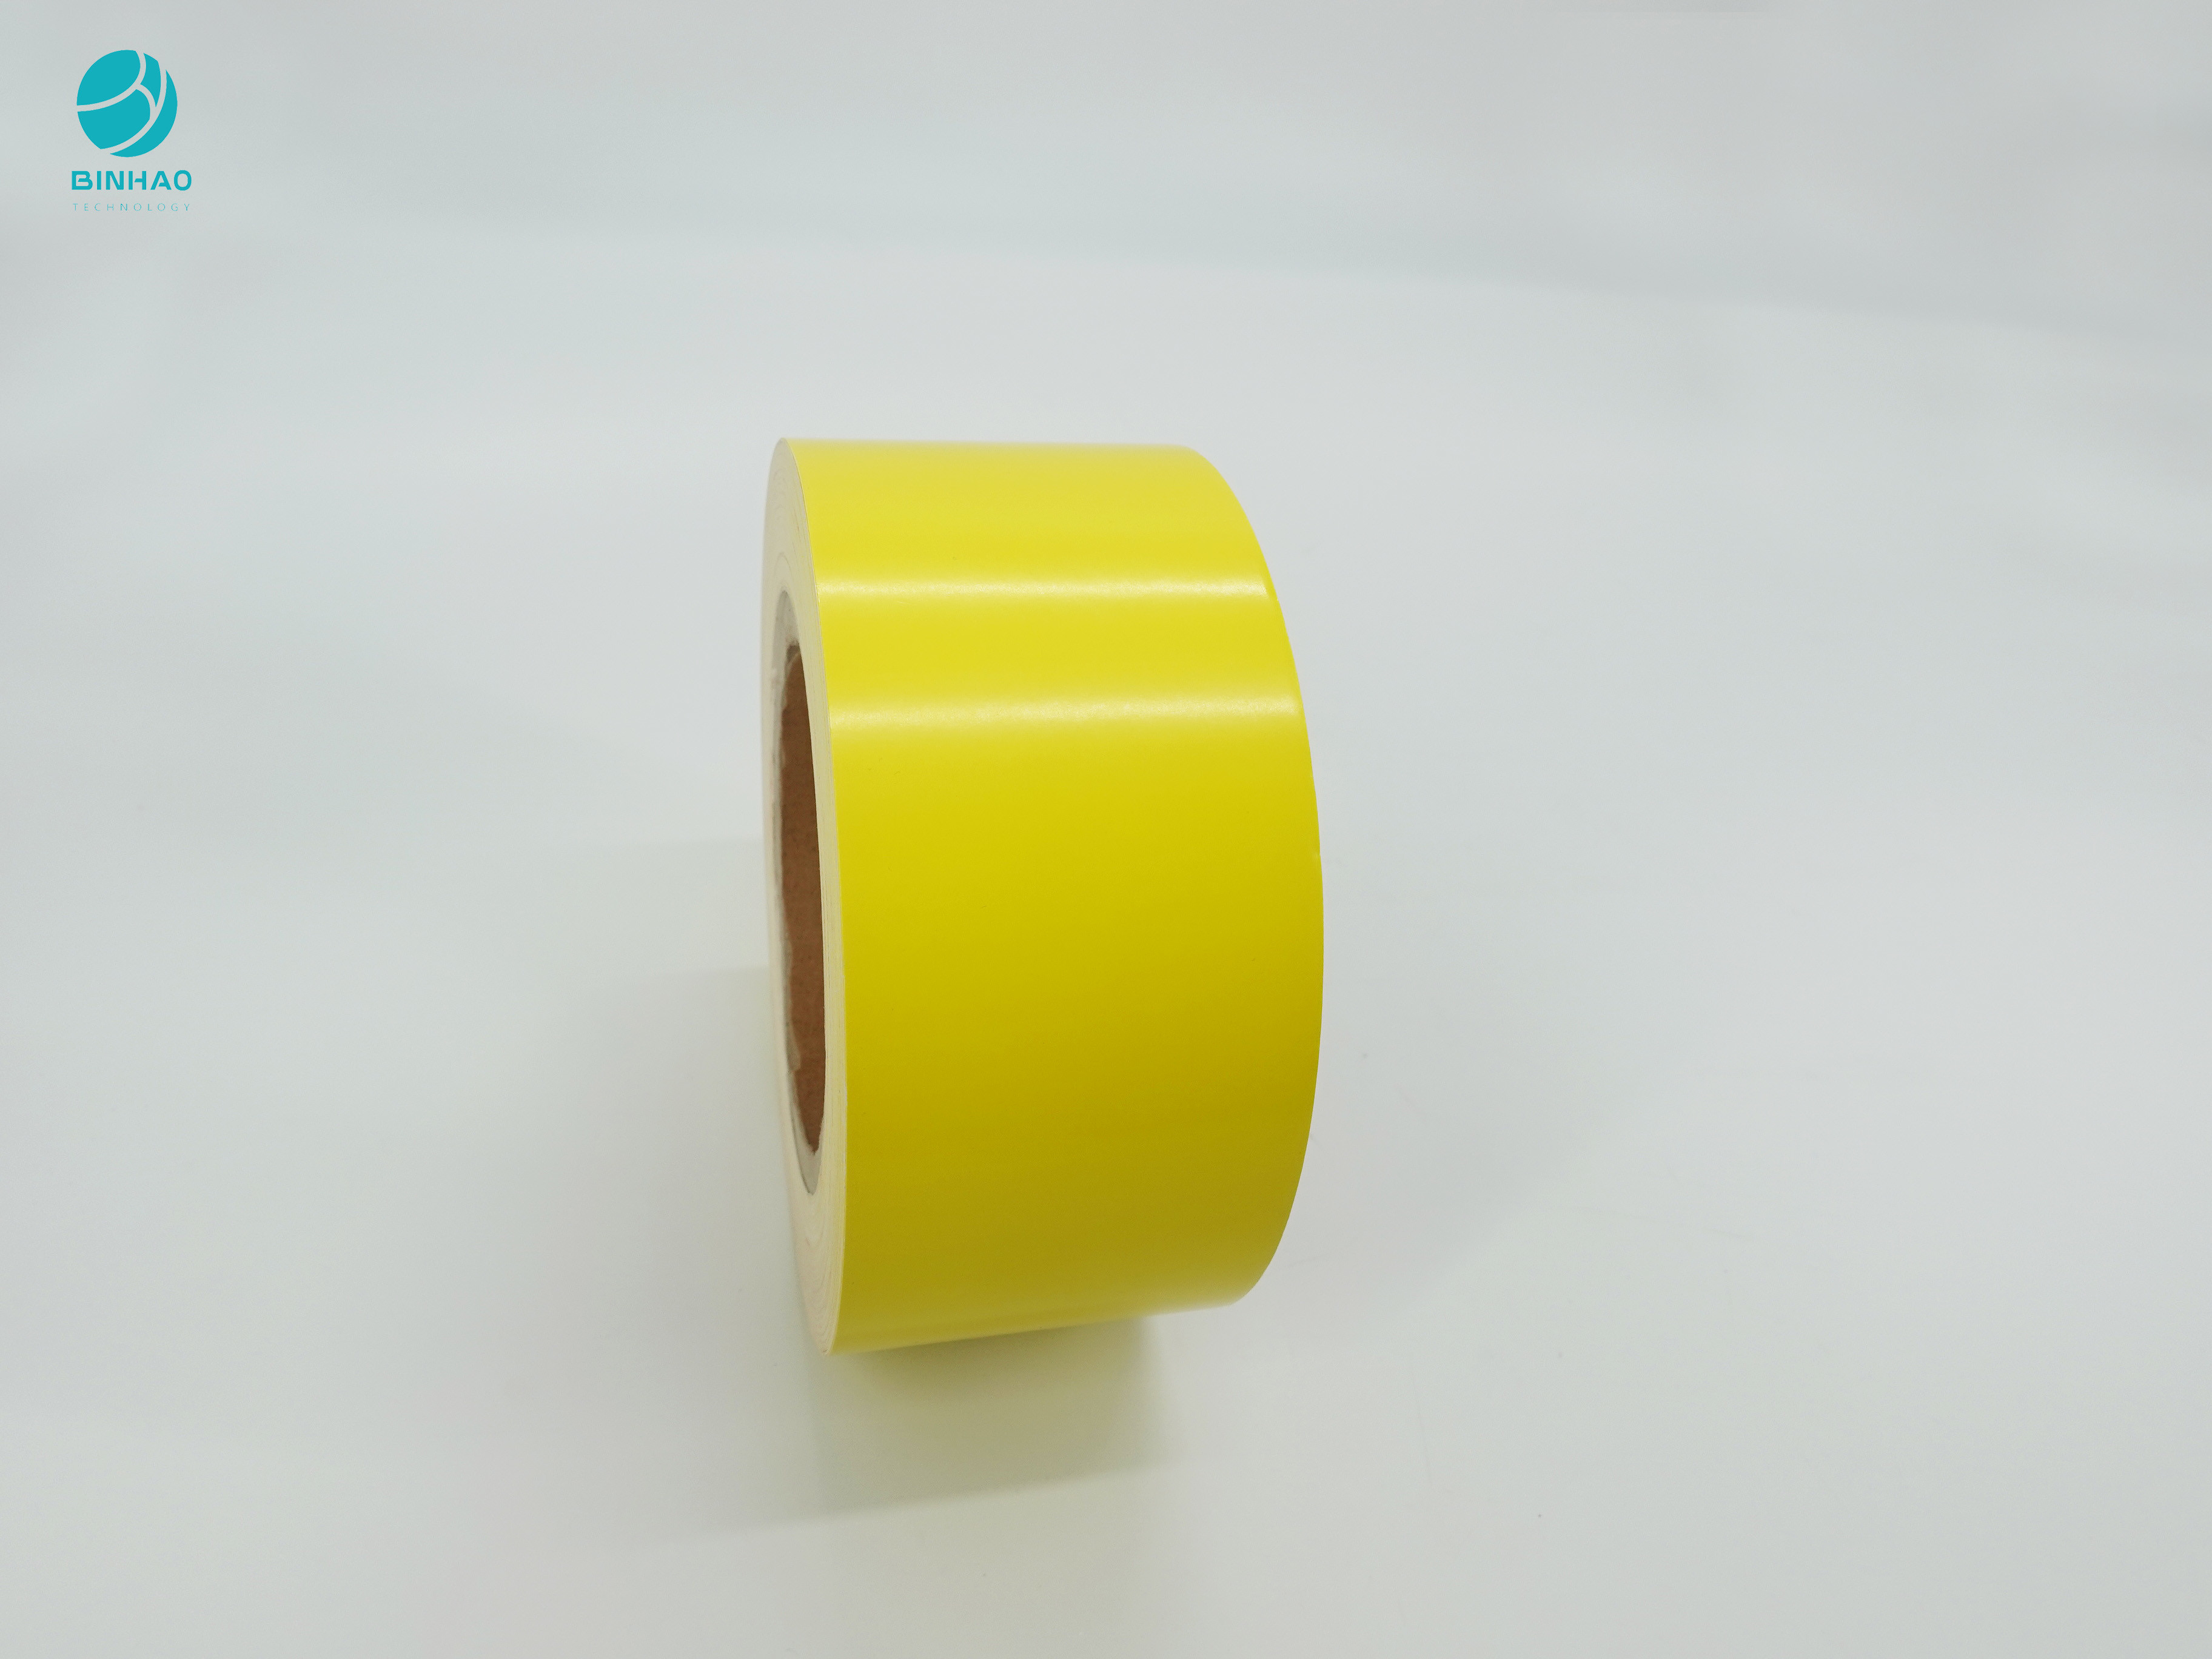 Rahmen-Papier SBS inneres recyclebare gelbe überzogene Pappfür Zigaretten-Verpackung